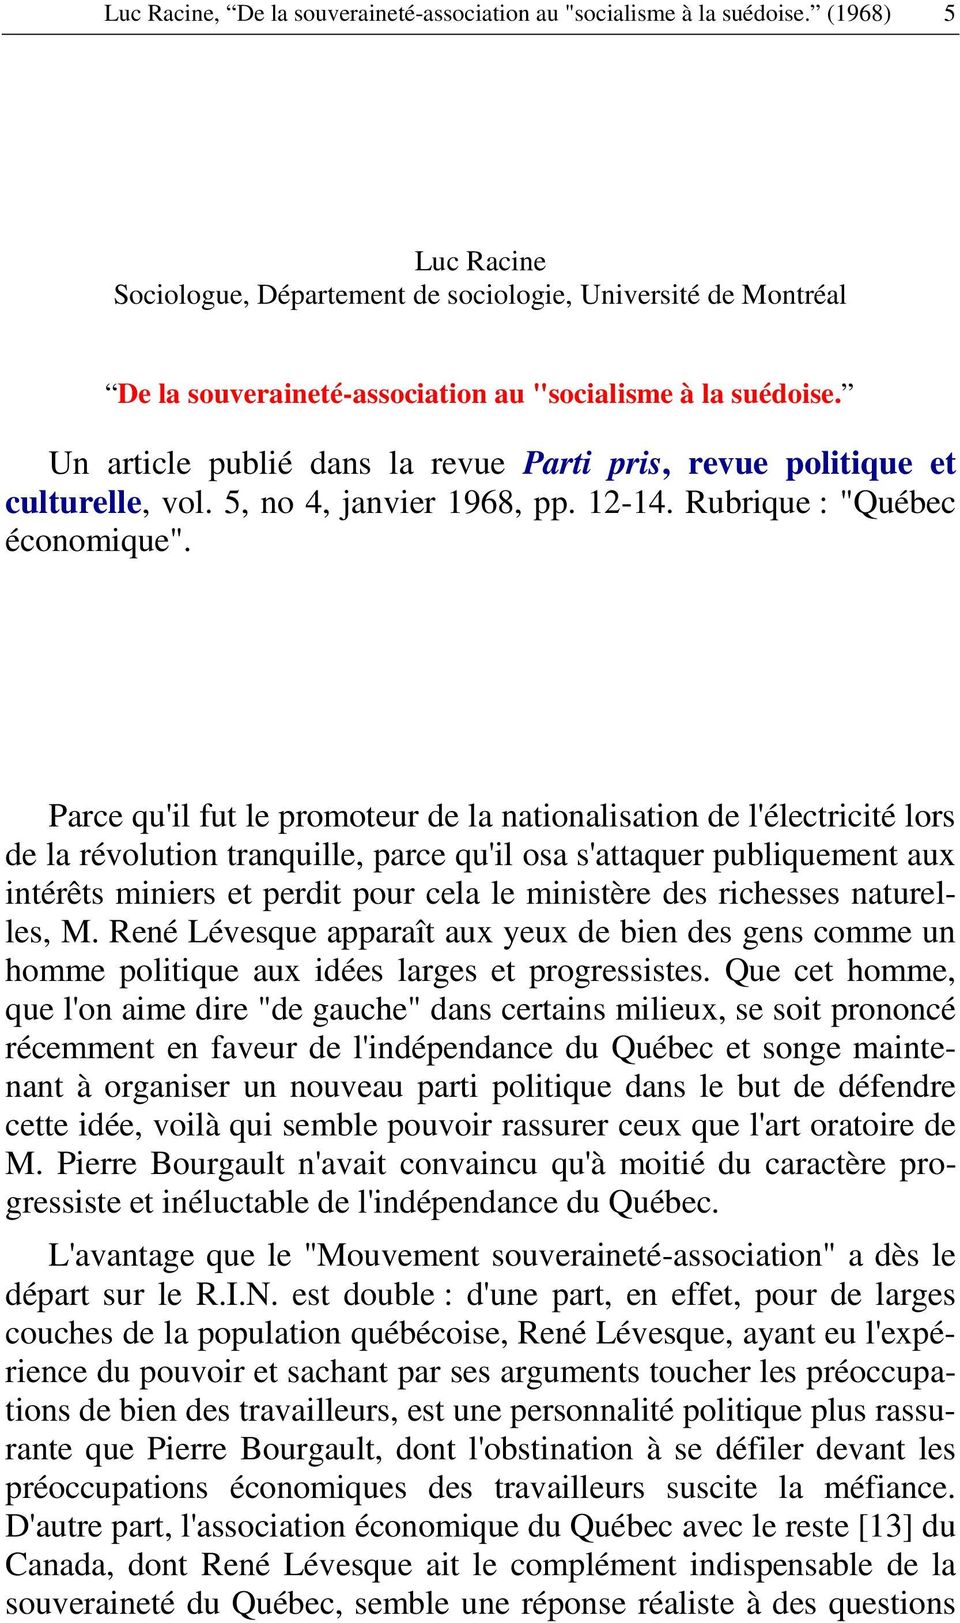 Un article publié dans la revue Parti pris, revue politique et culturelle, vol. 5, no 4, janvier 1968, pp. 12-14. Rubrique : "Québec économique".